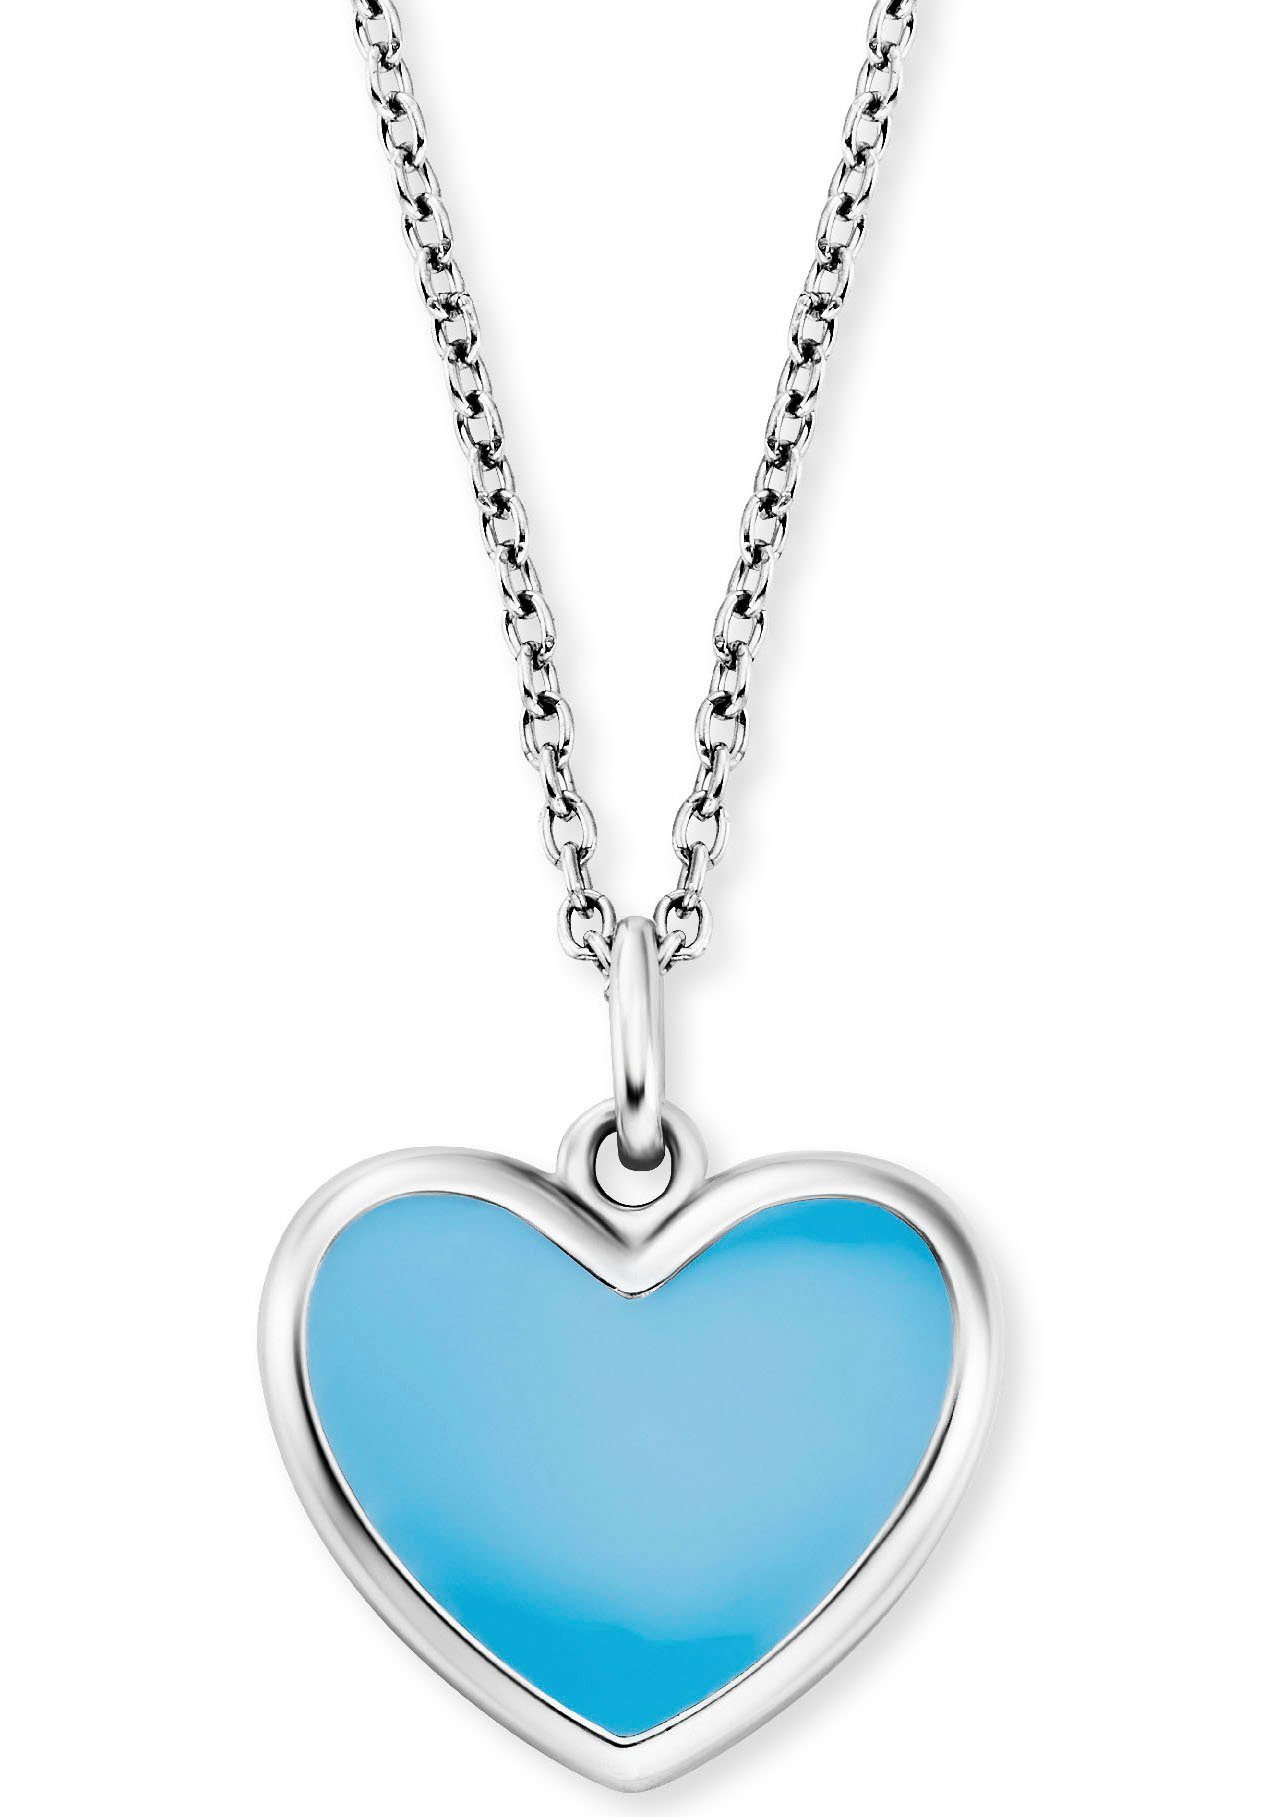 Herzengel Kette mit Anhänger Schmuck Geschenk, Little Heart, Herz, HEN-HEART-06, HEN-HEART-13 silberfarben-blau | Silberketten